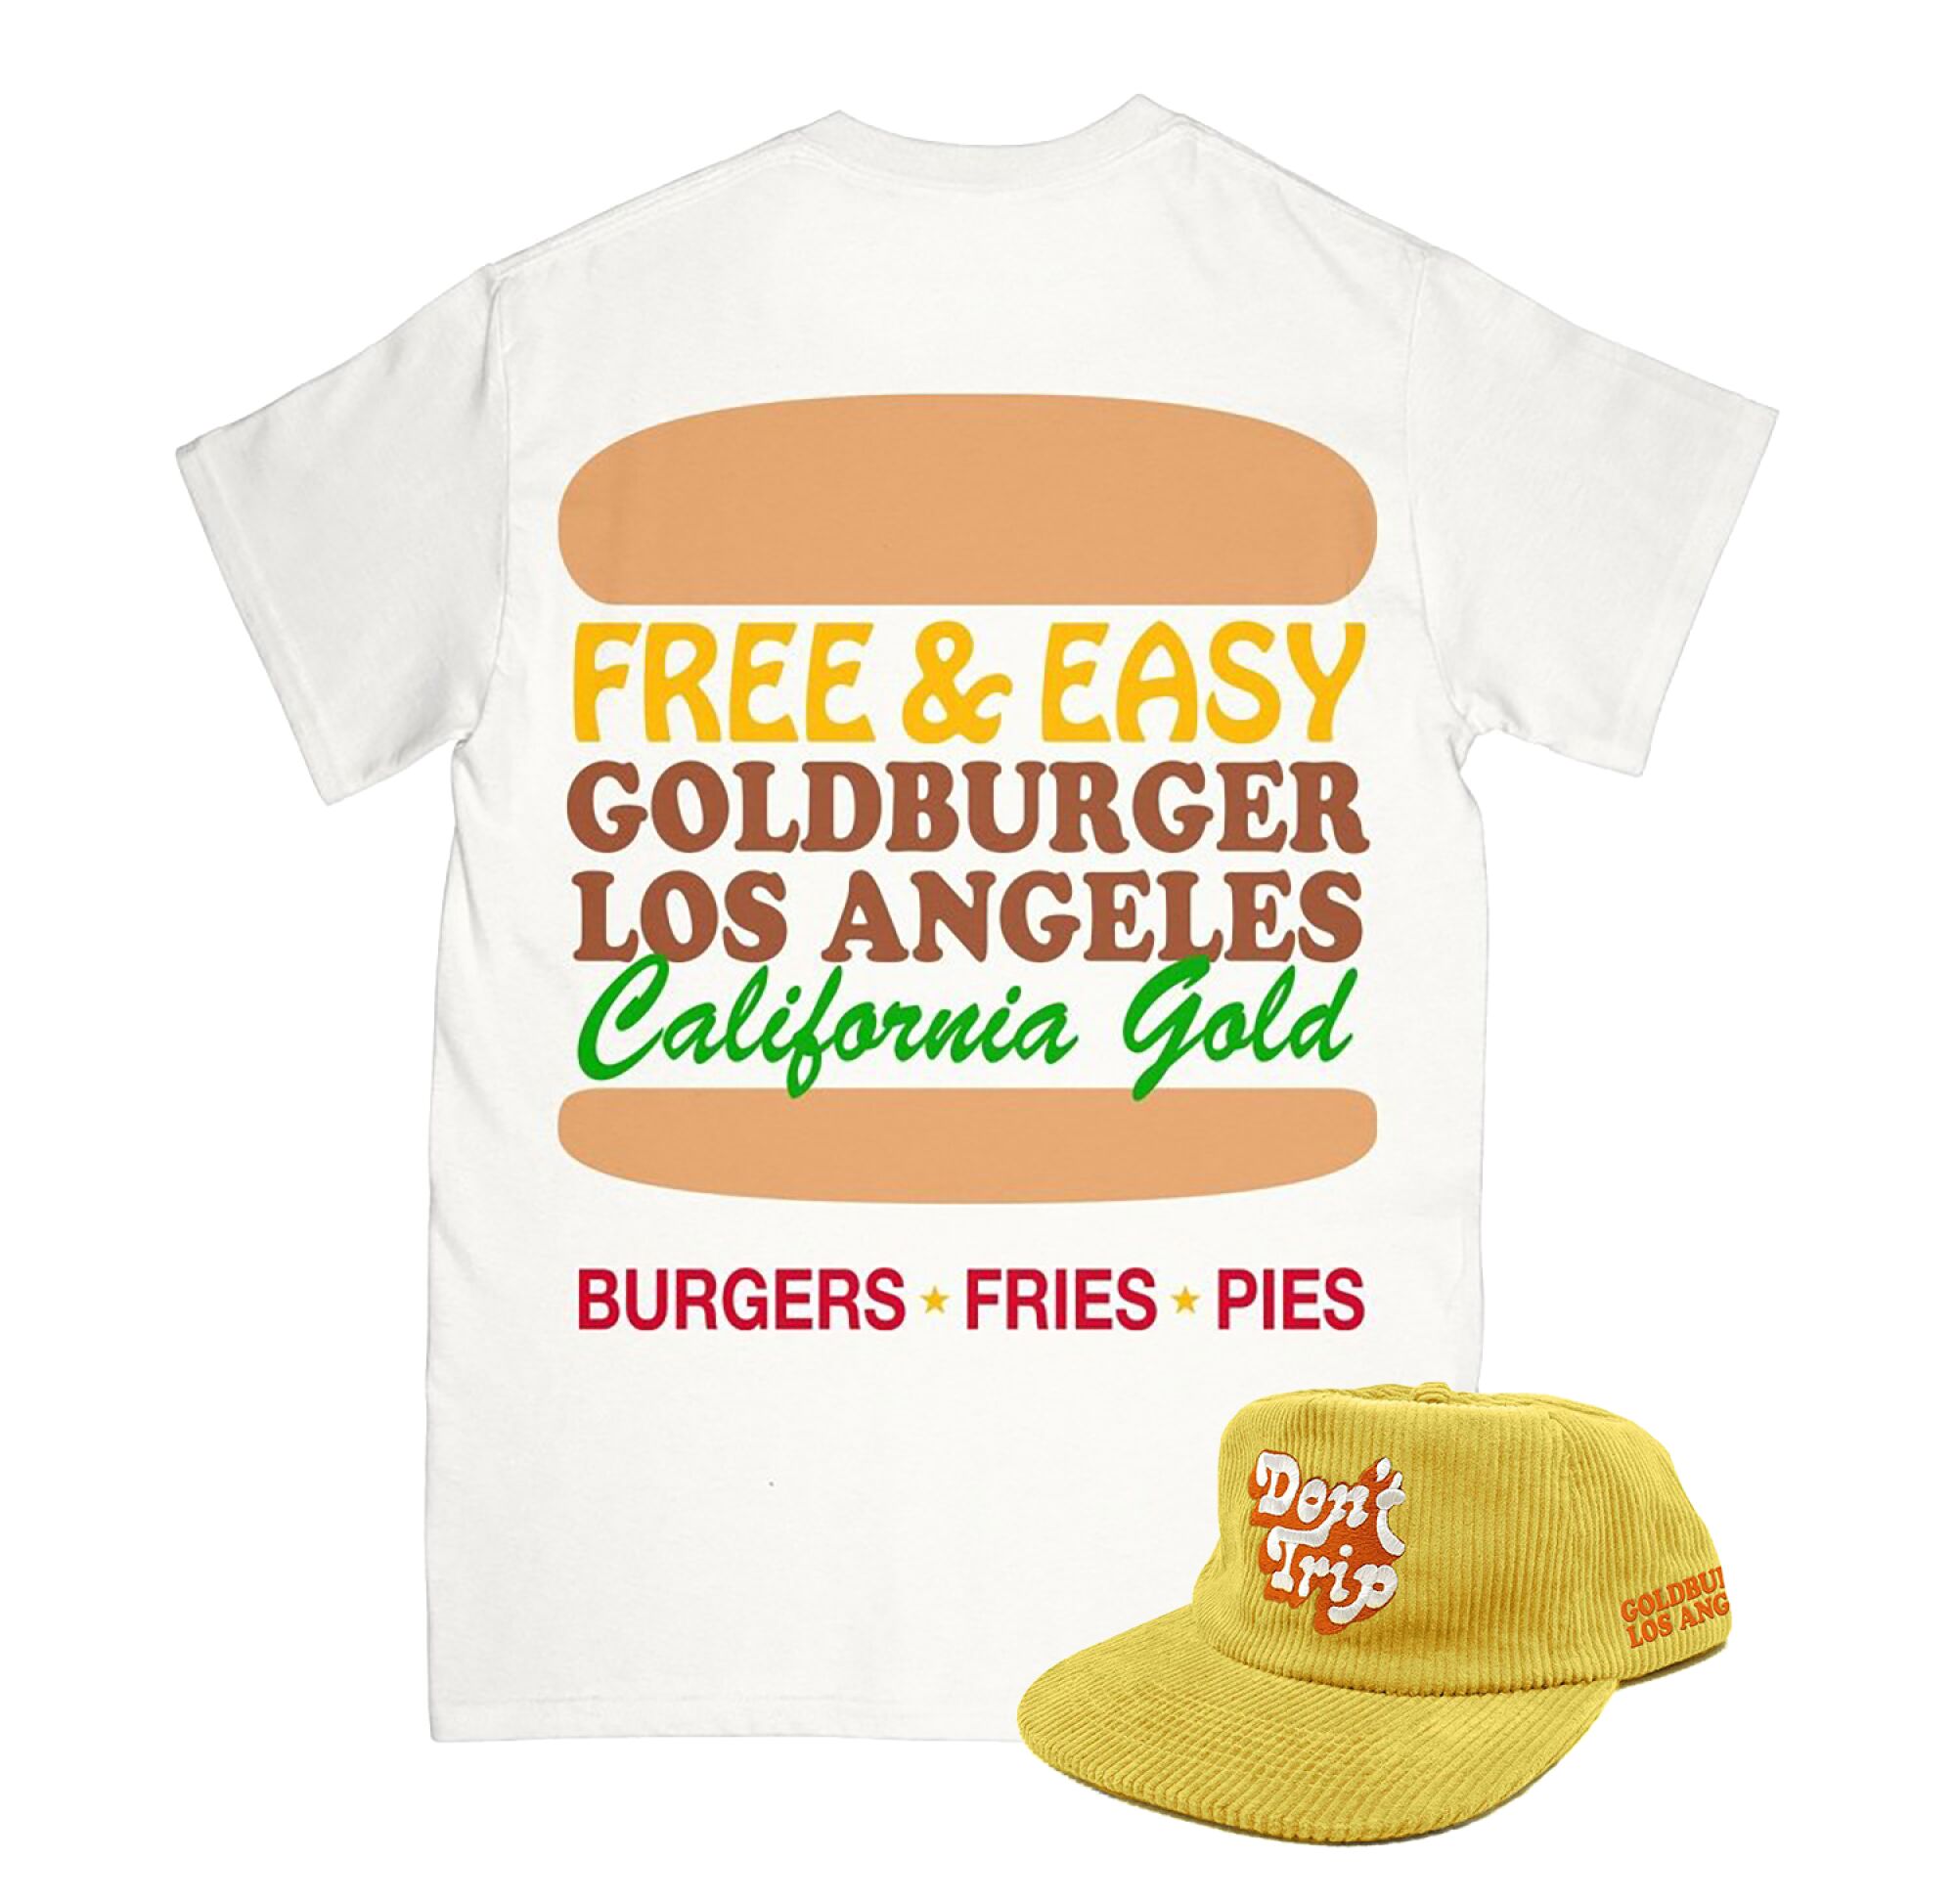 Goldburger X Free & Easy shirt with two hamburger buns